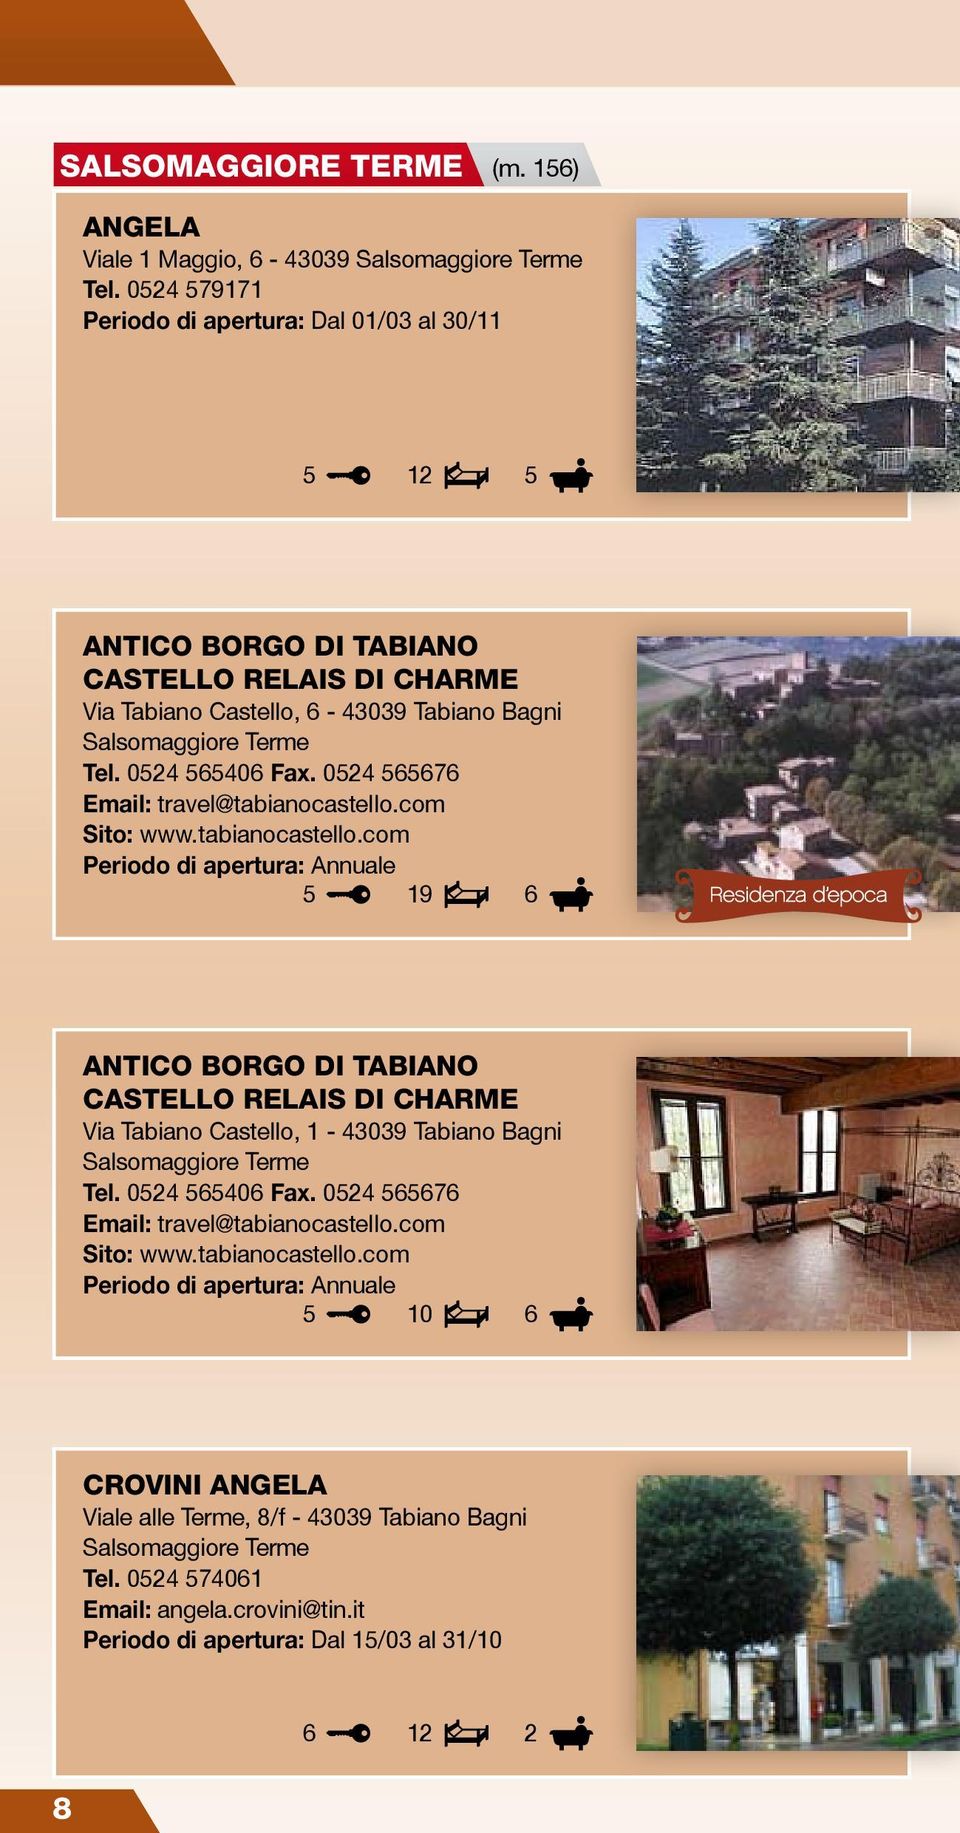 02 0 Fax. 02 7 Email: travel@tabianocastello.com Sito: www.tabianocastello.com 19 ANTICO BORGO DI TABIANO CASTELLO RELAIS DI CHARME Via Tabiano Castello, 1-09 Tabiano Bagni Salsomaggiore Terme Tel.